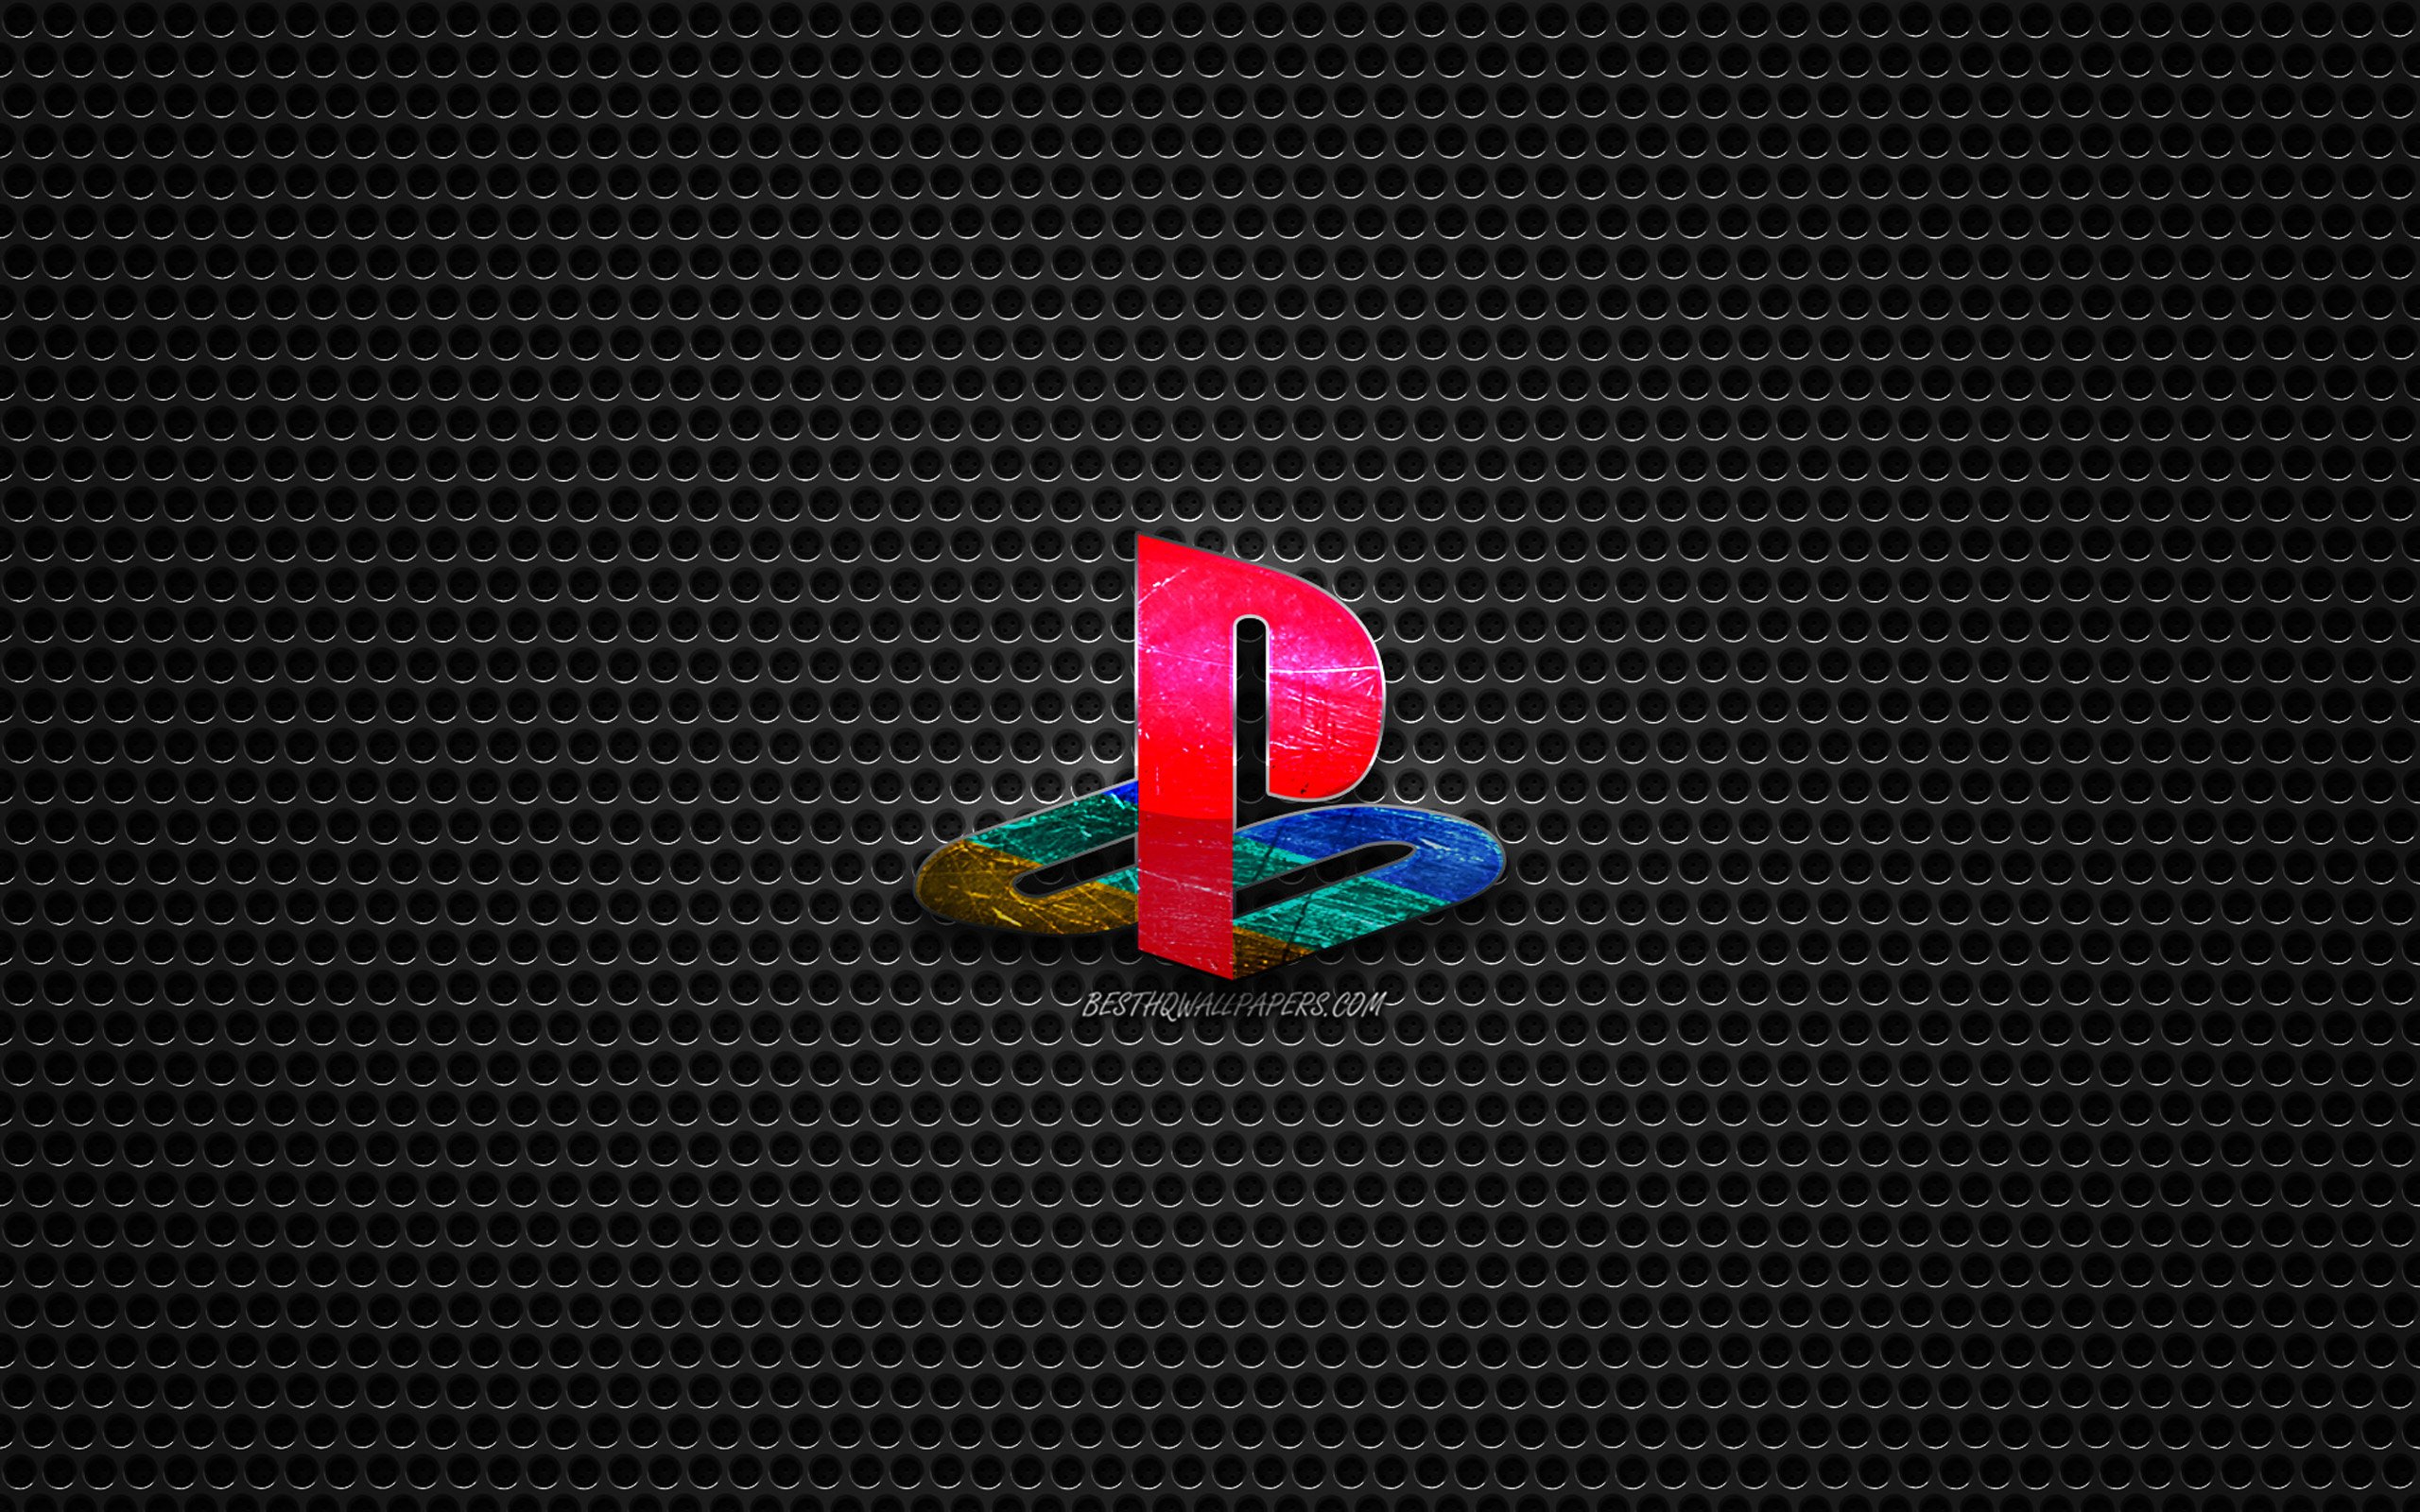 ダウンロード画像 Ps4ロゴ Playstation4 鉄鋼研磨ロゴ Ps4エンブレム ブランド 金属メッシュの質感 ブラックメタル背景 Ps4 Playstation 画面の解像度 2560x1600 壁紙デスクトップ上